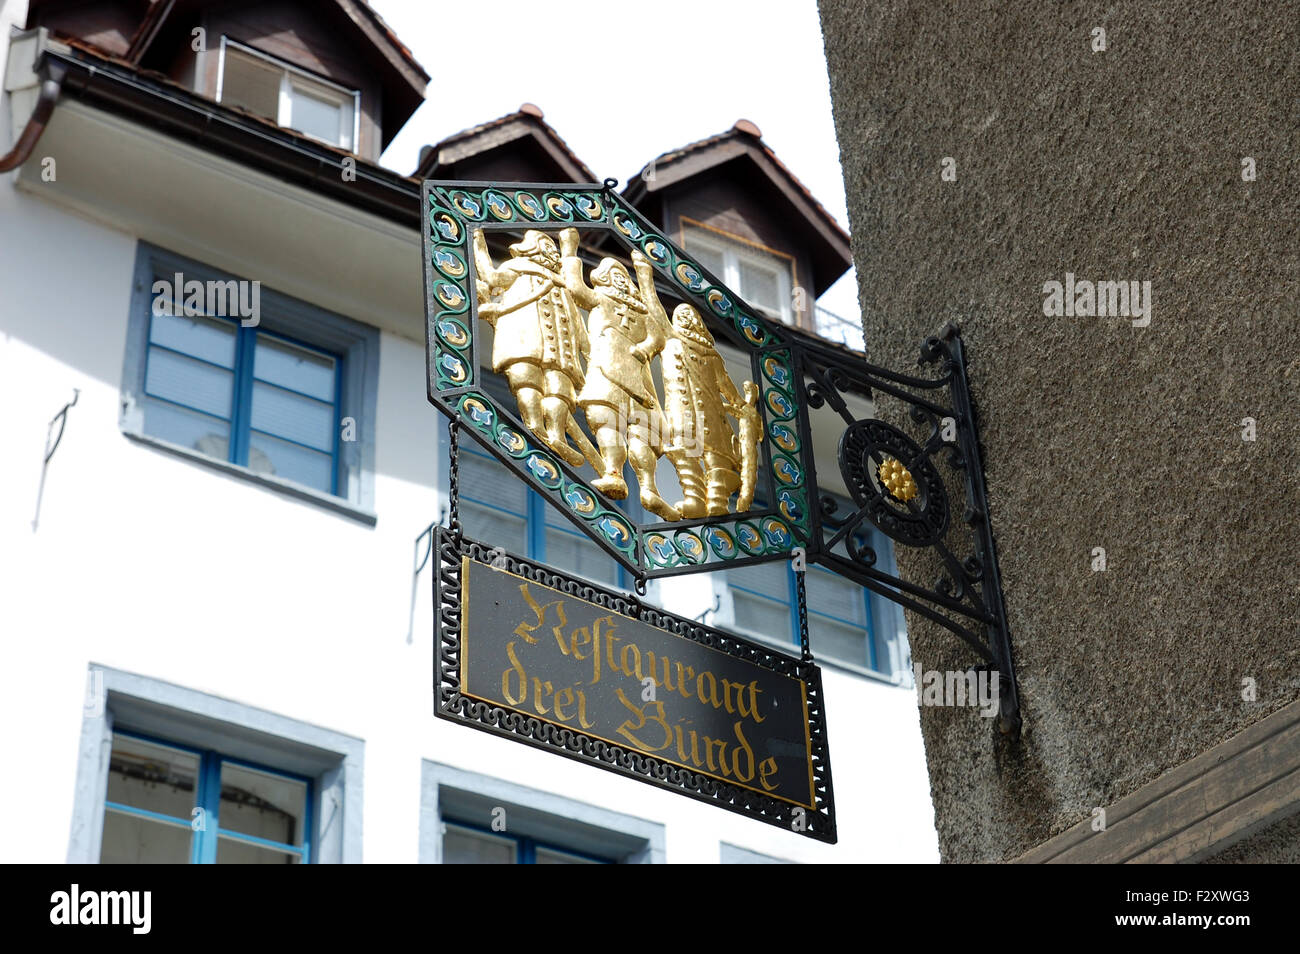 Blechschild für das Restaurant Drei Bünde in Chur, Schweiz Stockfotografie  - Alamy